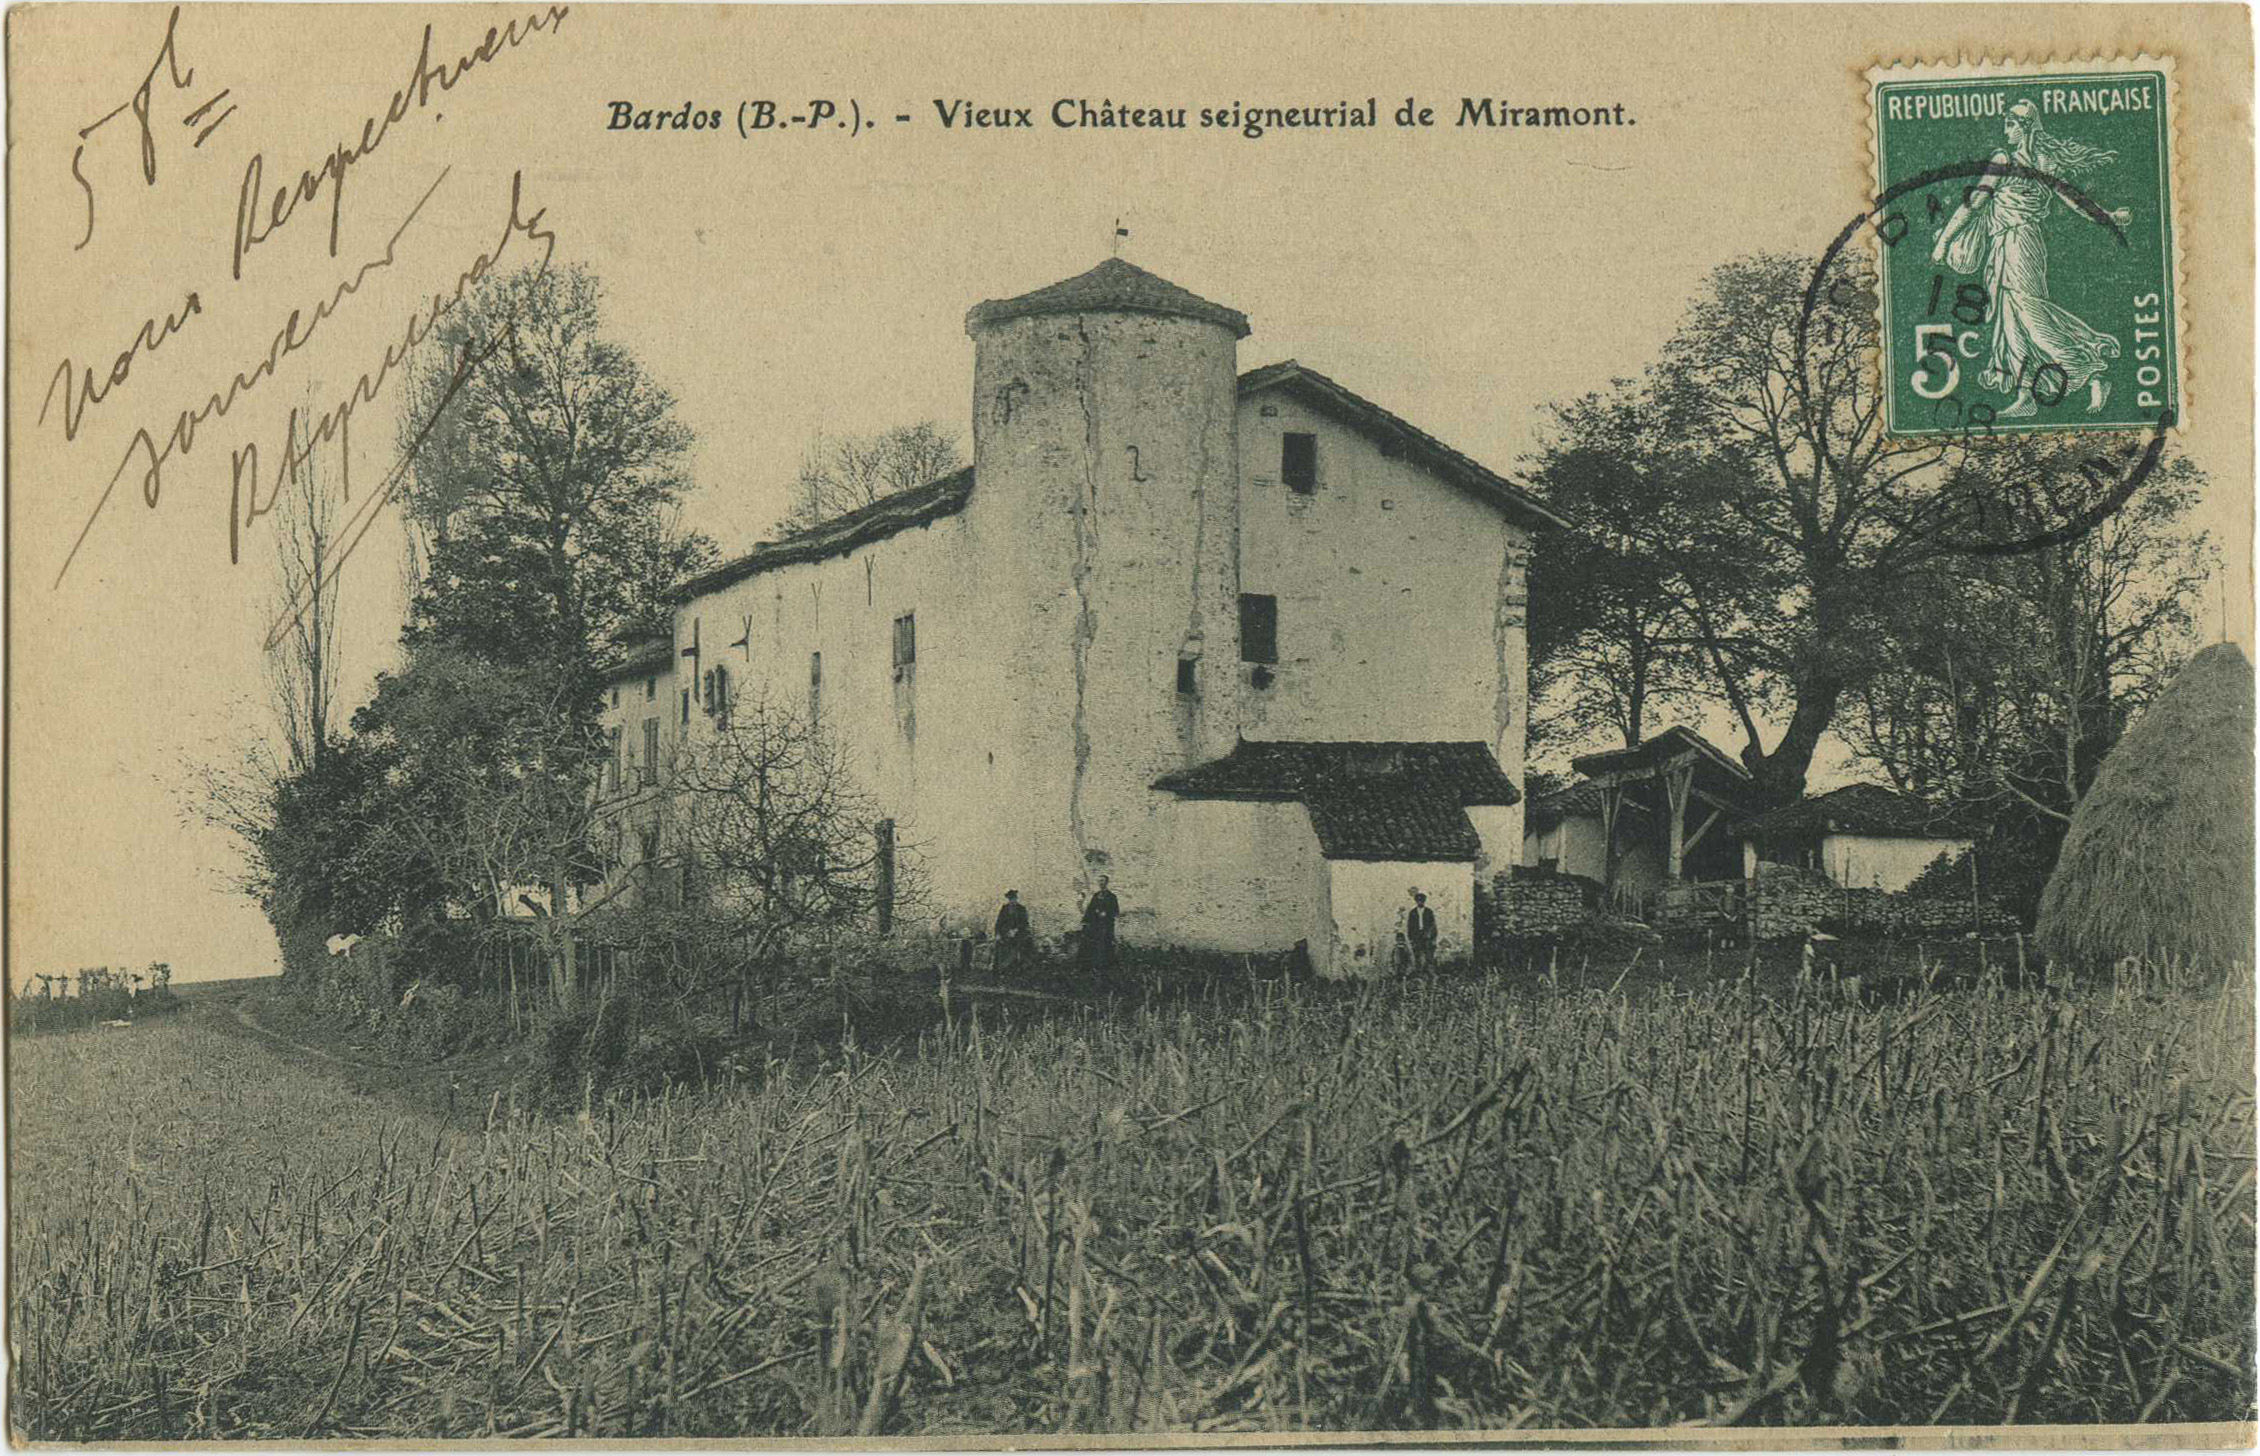 Bardos - Vieux Château seigneurial de Miramont.